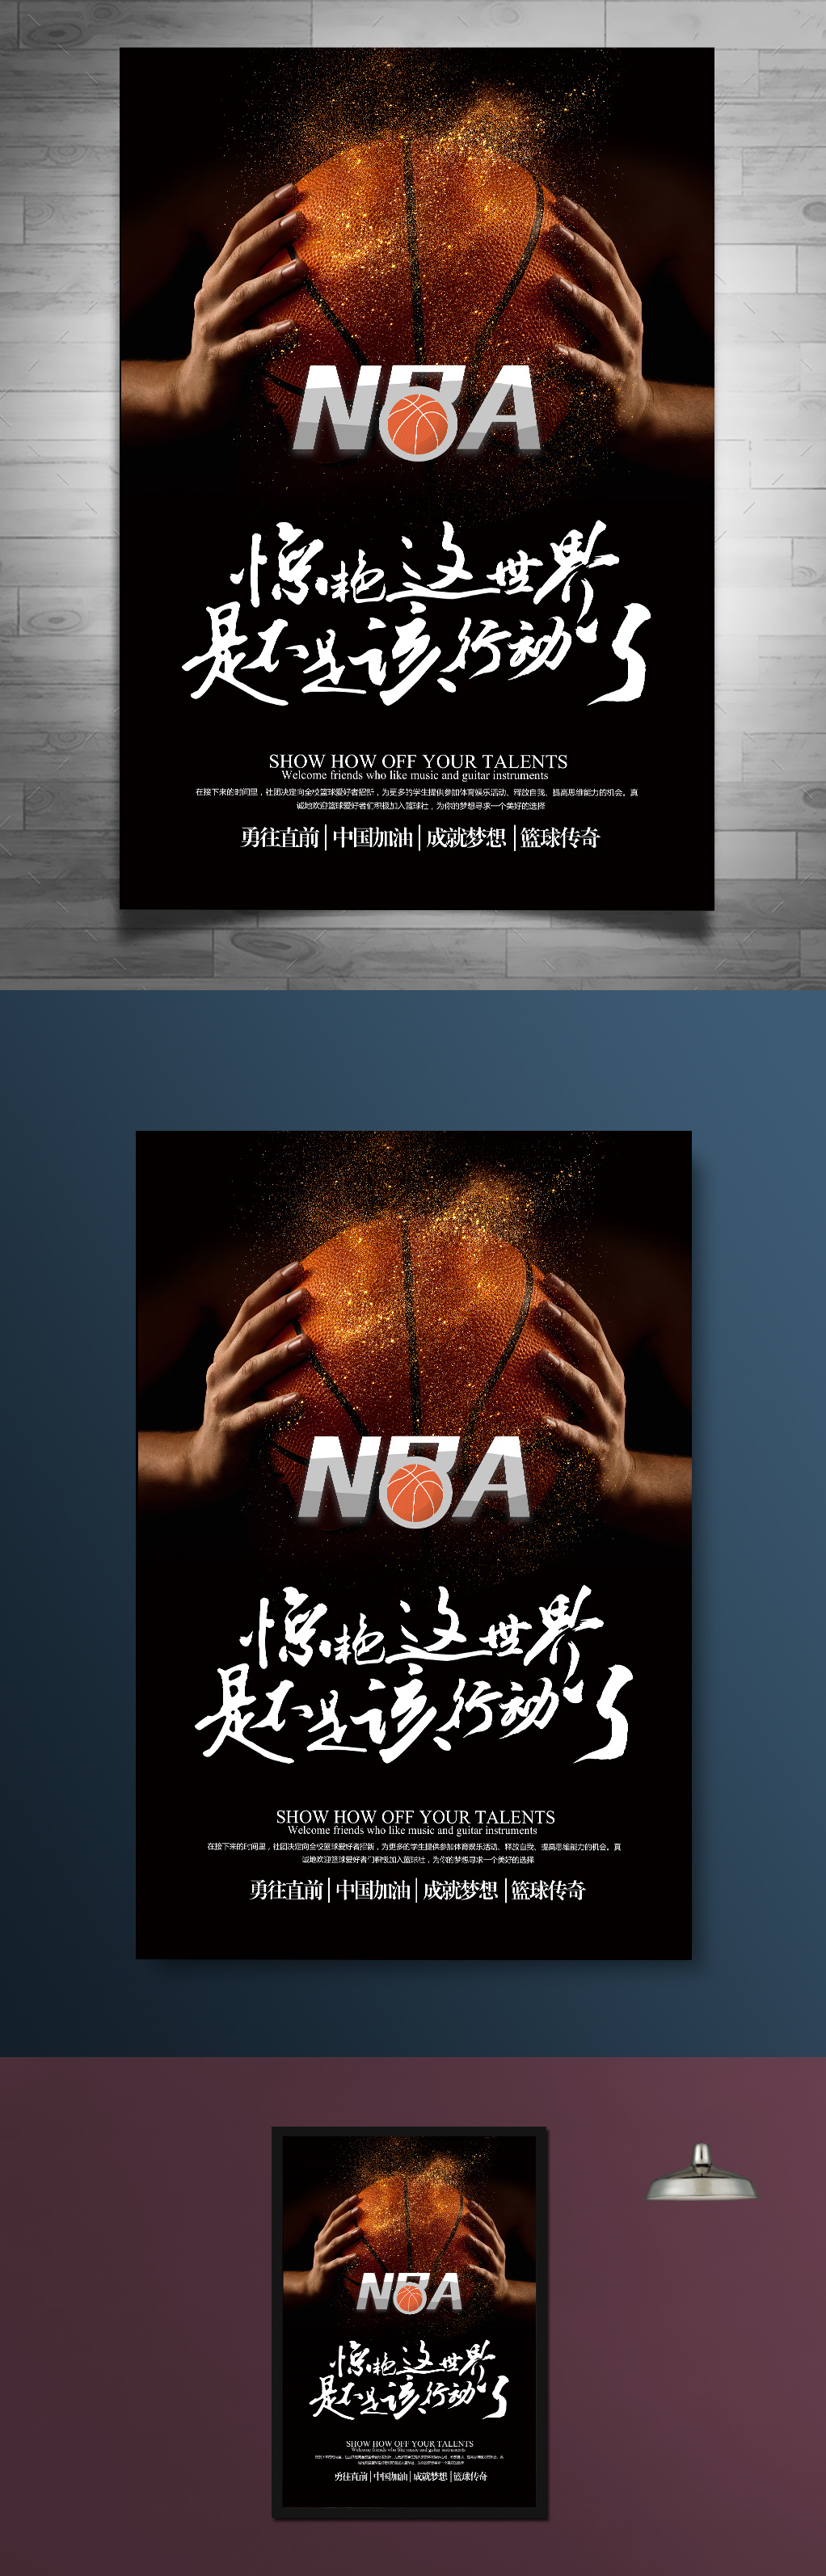 篮球运动NBA比赛海报